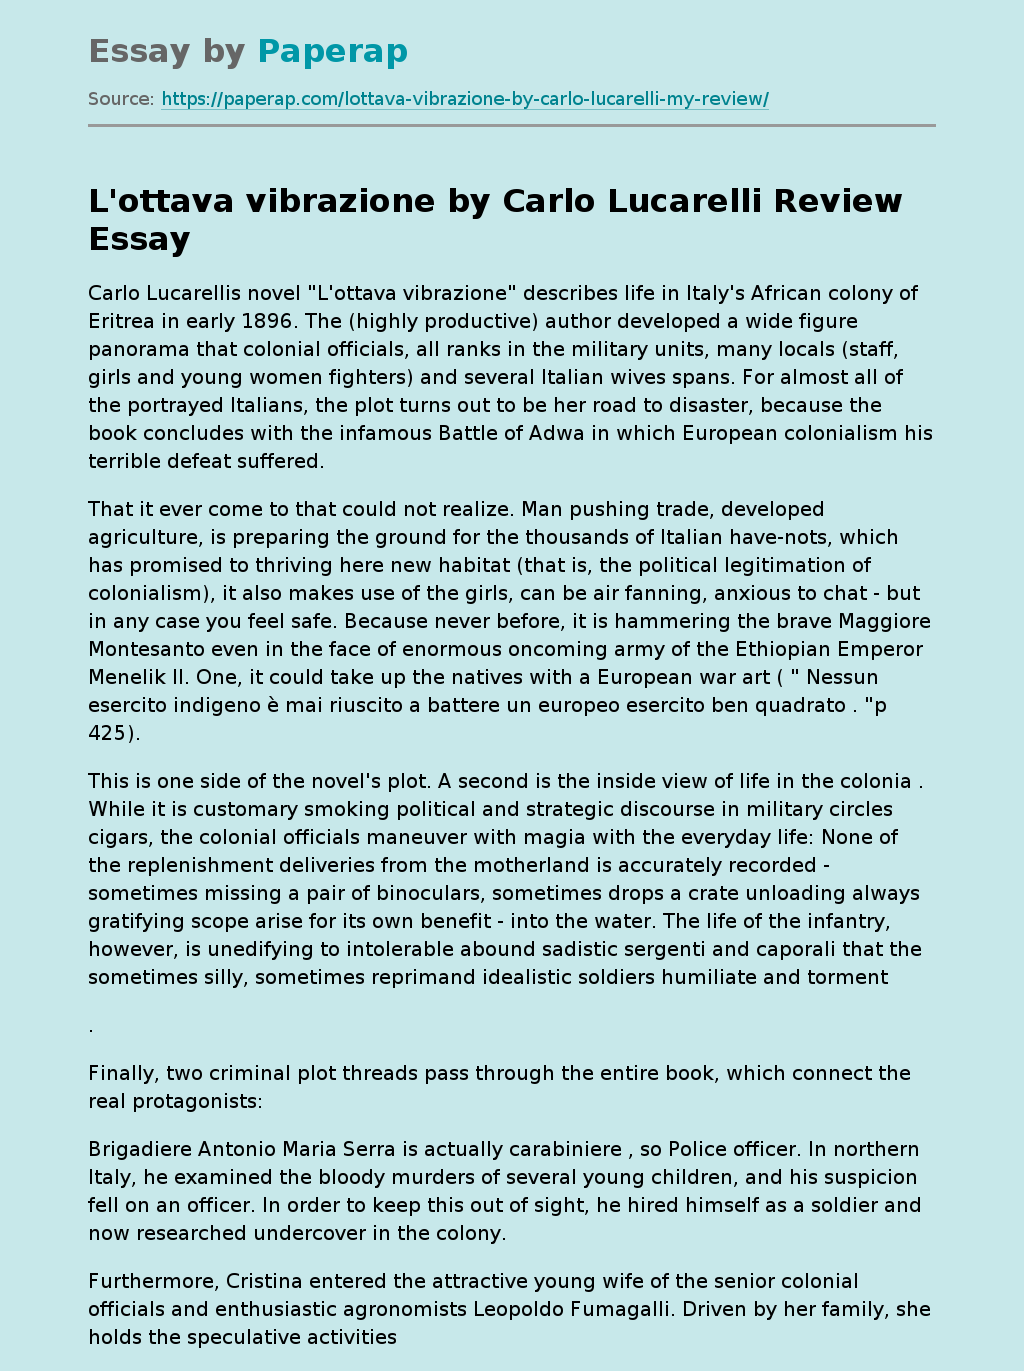 "L’Ottava Vibrazione" by Carlo Lucarelli